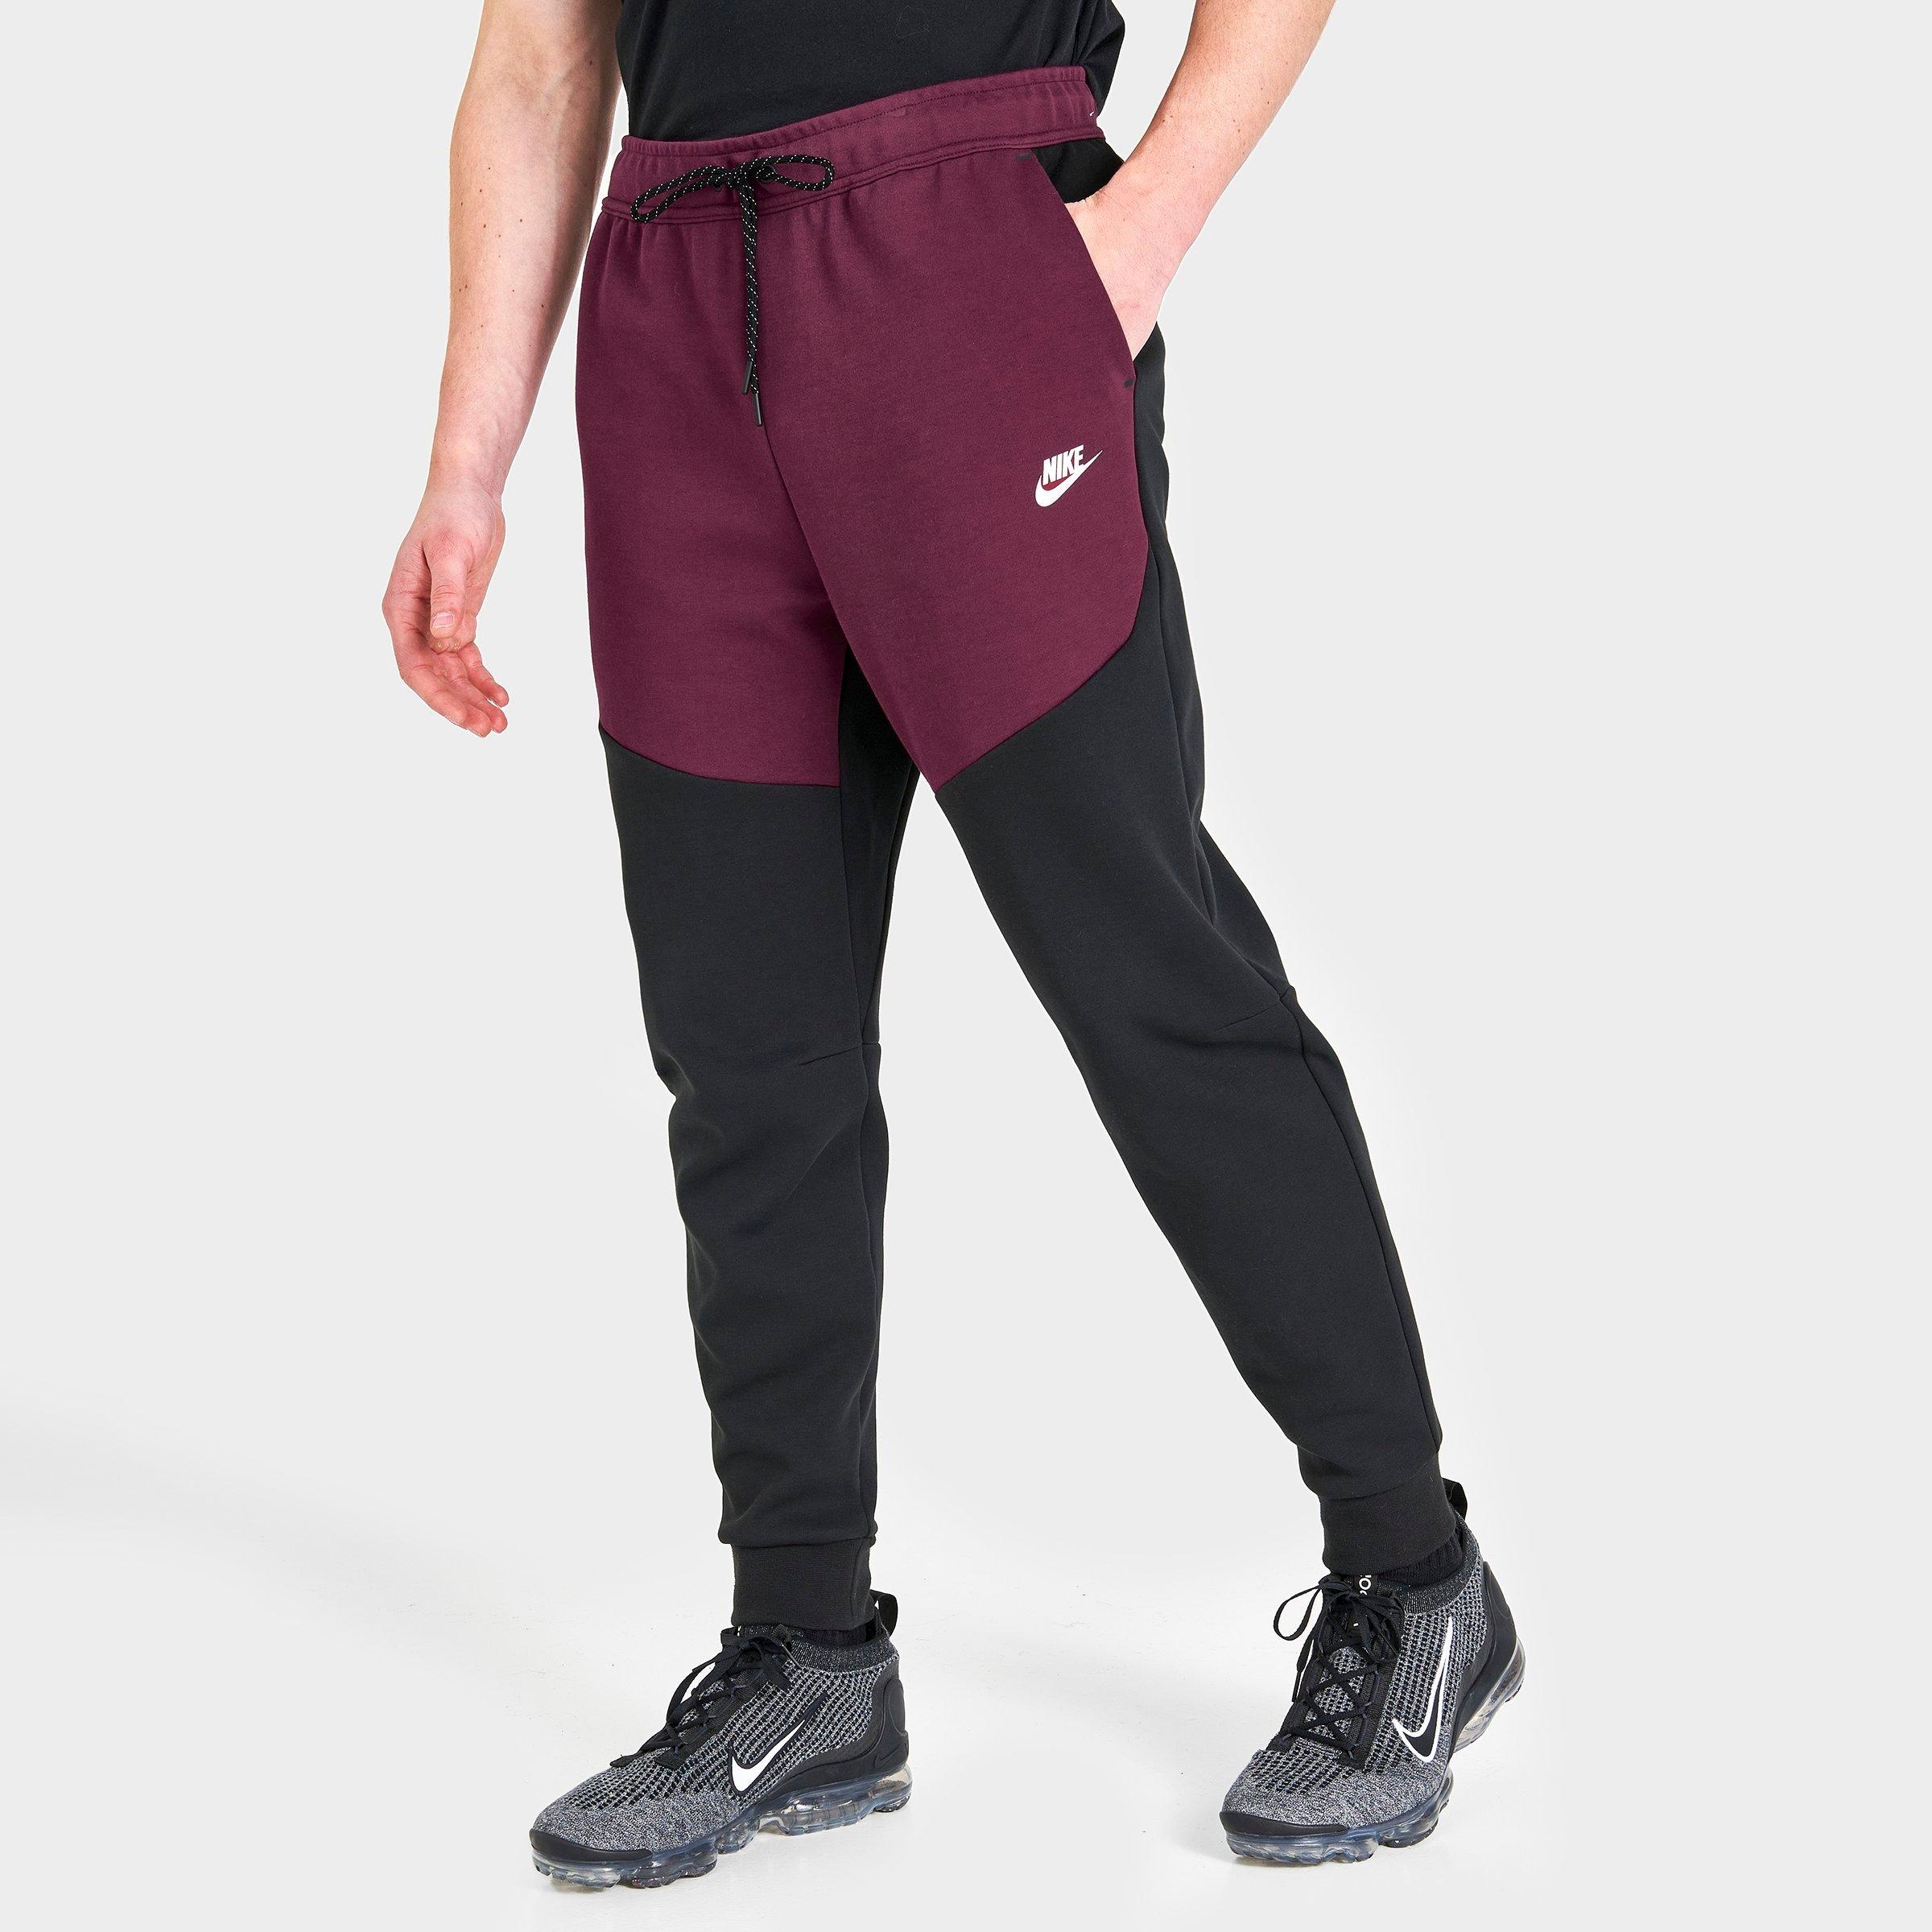 Nike Men's Tech Fleece Pant Grey CU4495 063 - Sam Tabak